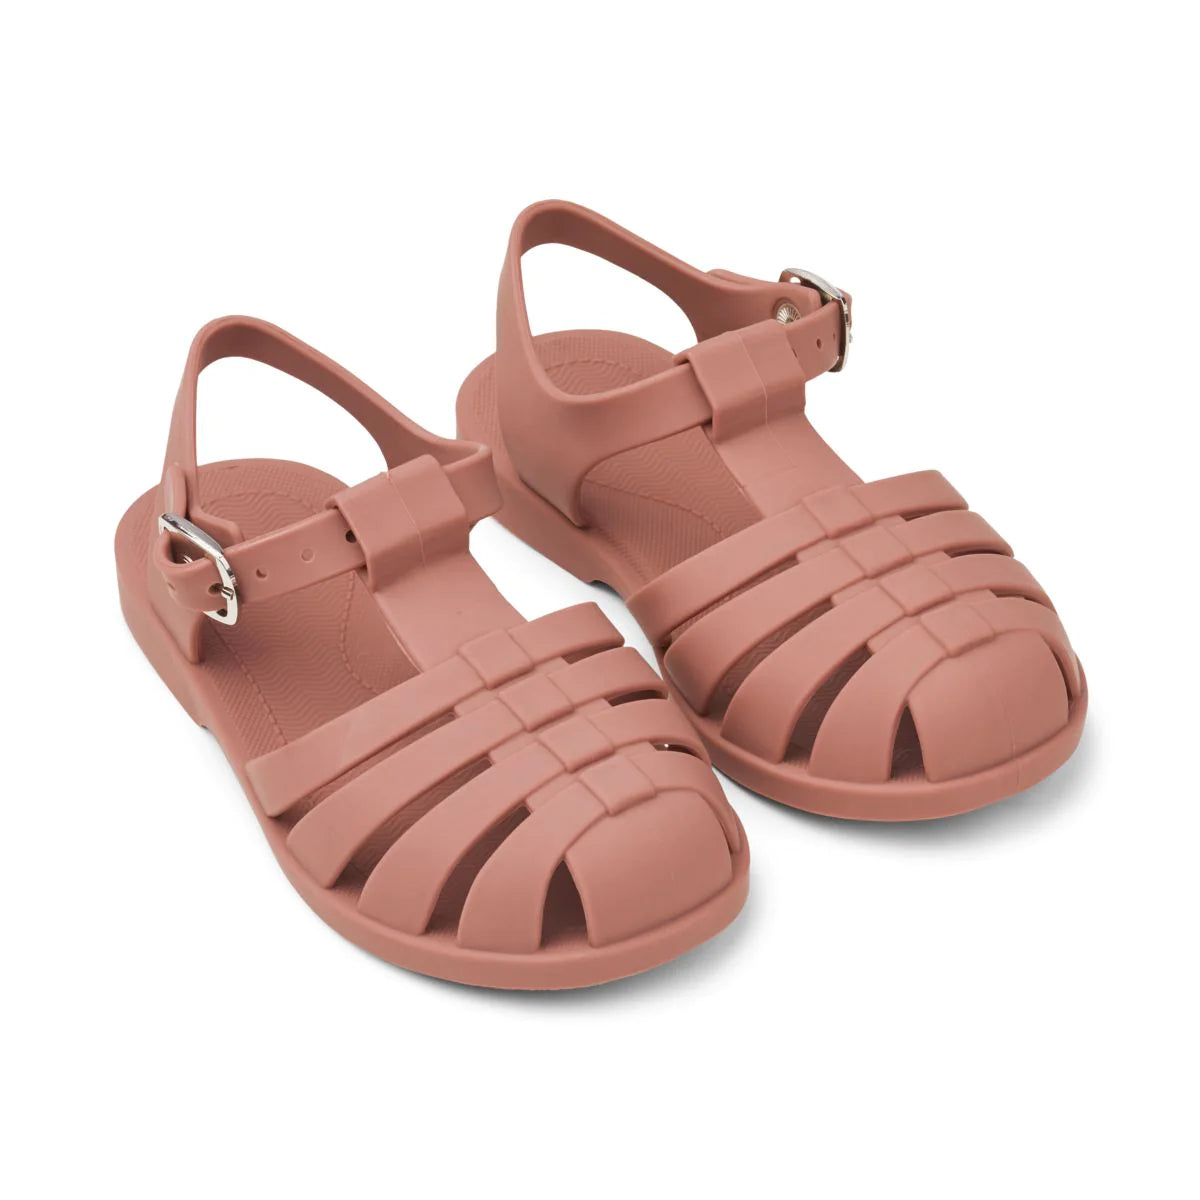 An image of Buy Liewood Bre Beach Sandals - Summer Kids Sandals Dark Rose New / 31